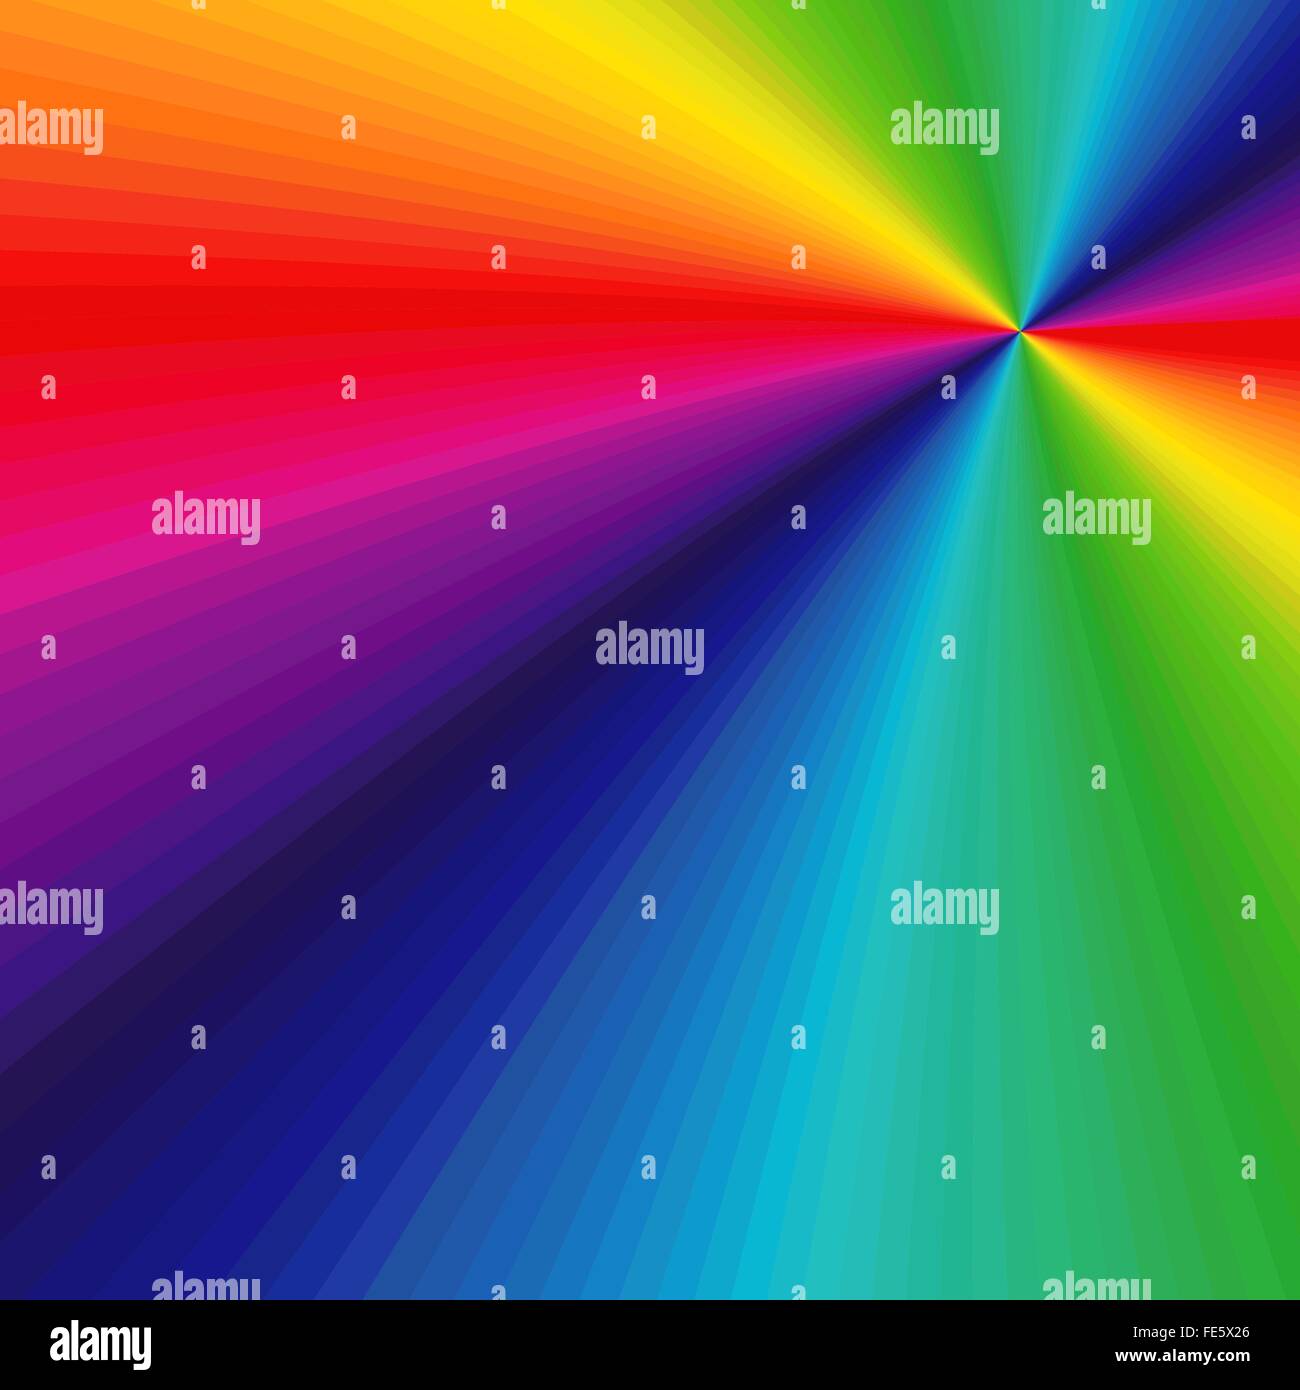 Abstract variegato disegno vettoriale con molti colori simmetria radiale fasci di spettro visibile Illustrazione Vettoriale